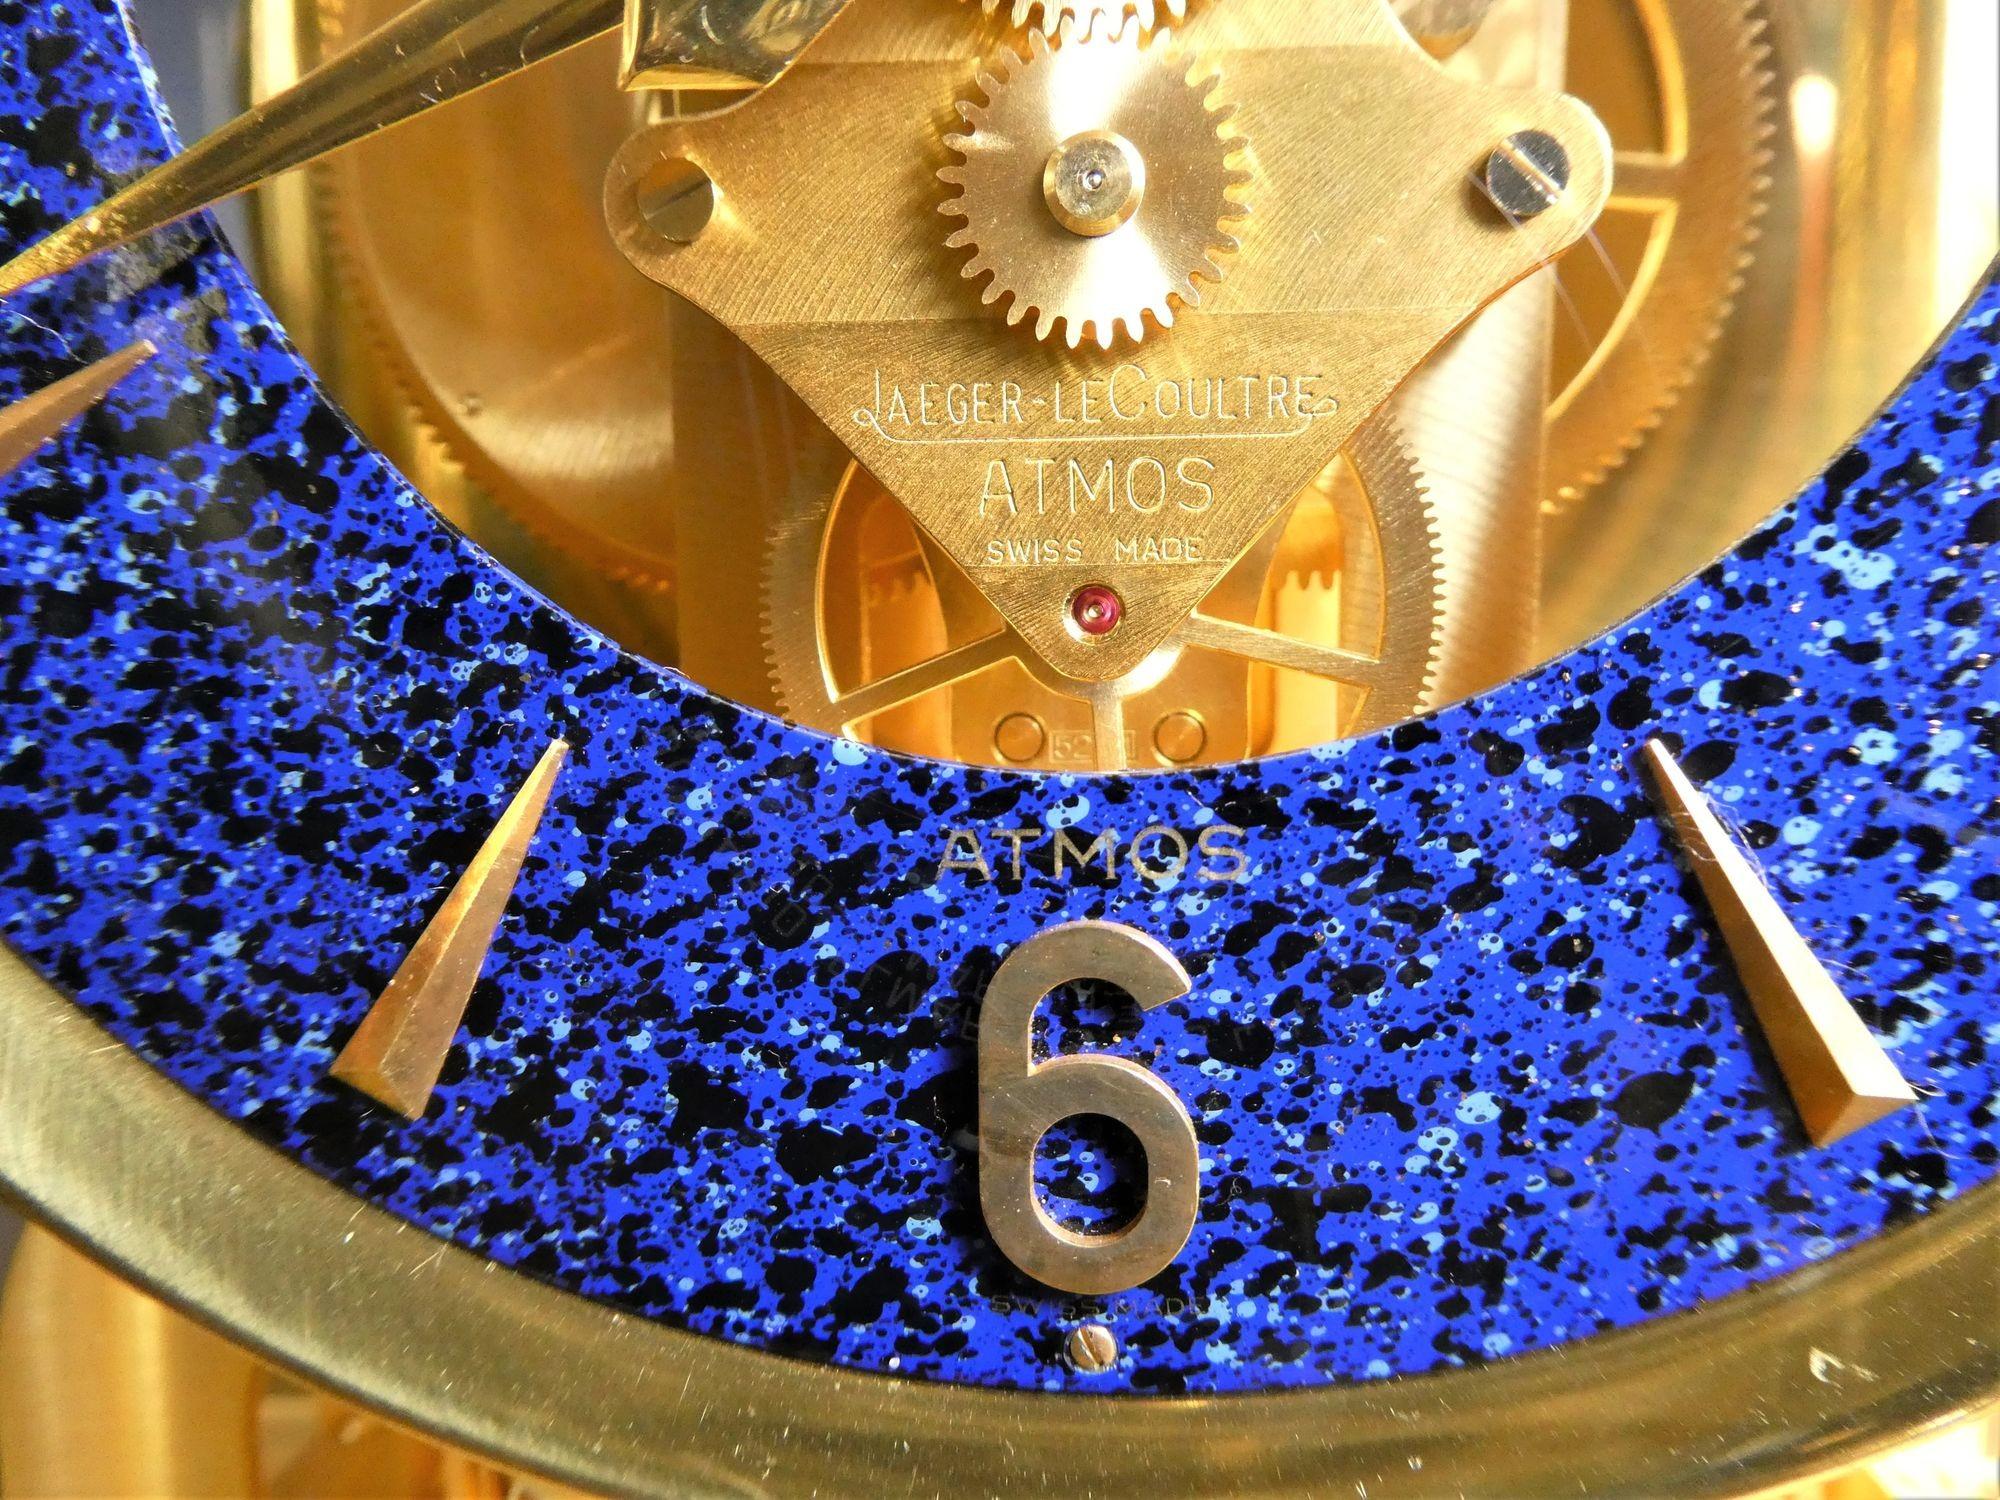 jaeger-lecoultre atmos clock 1970